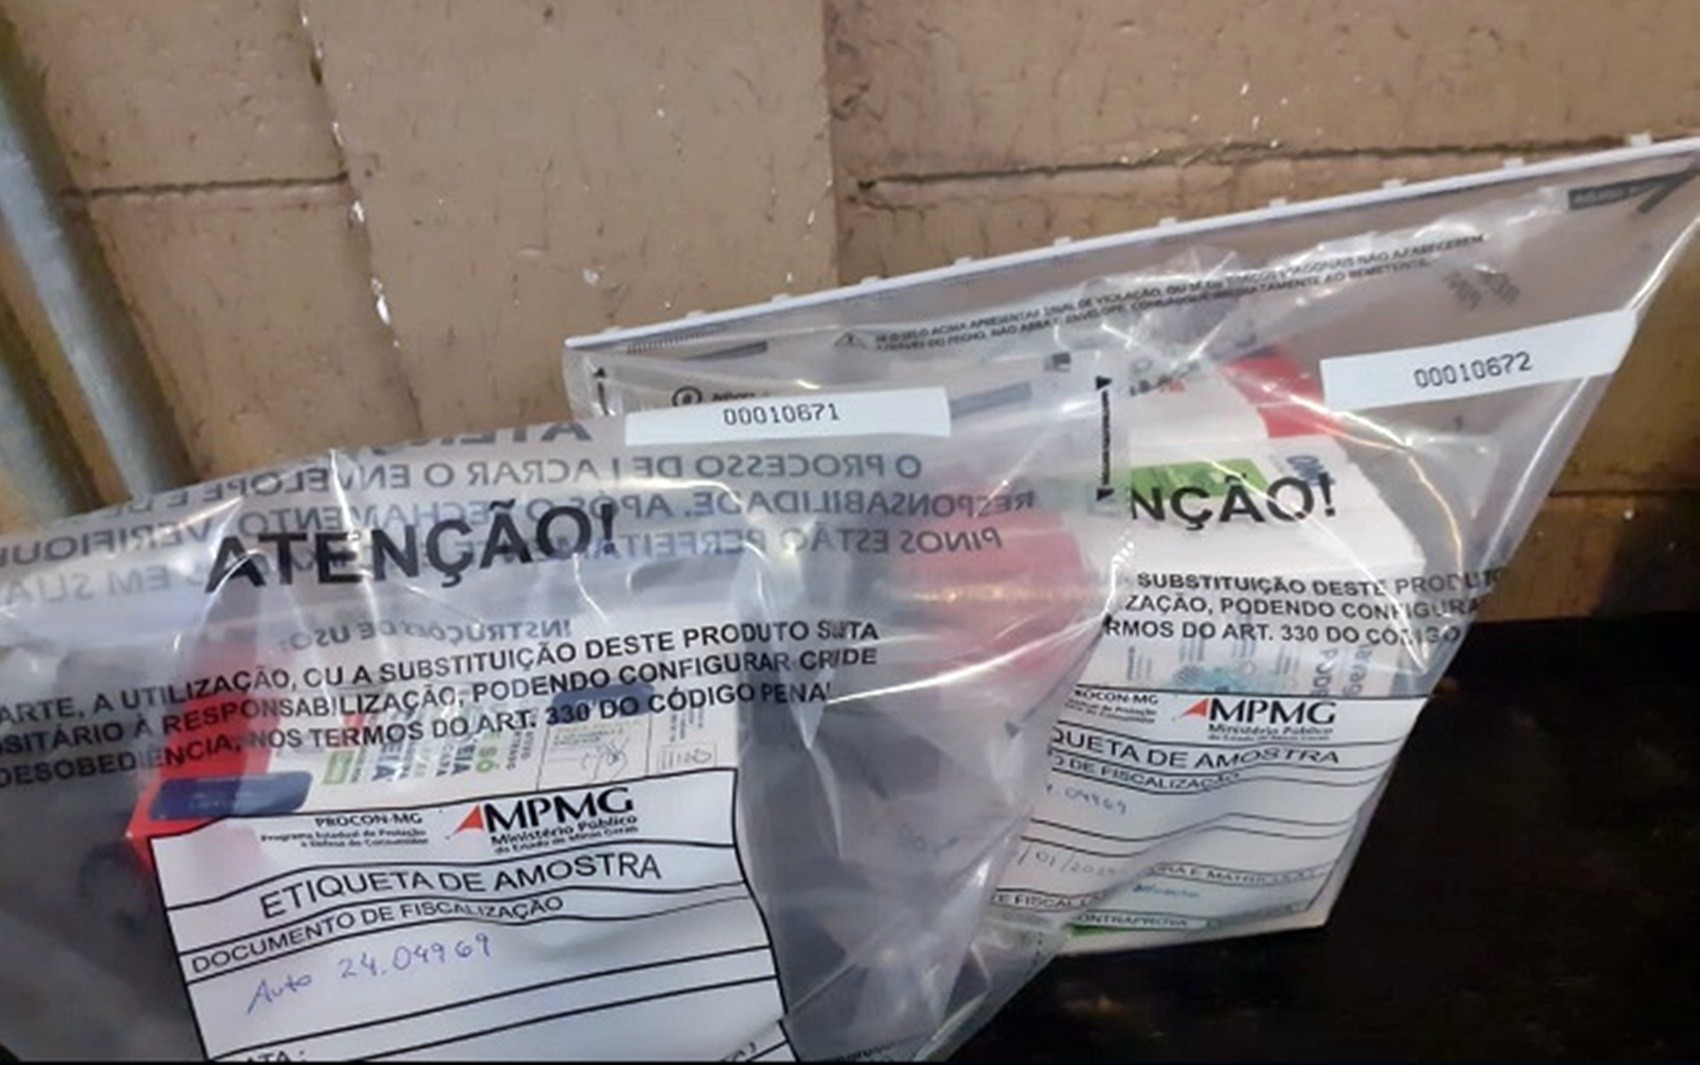 Ministério Público investiga venda de caixas de sabão em pó falsificado em hipermercado de Campo Belo, MG